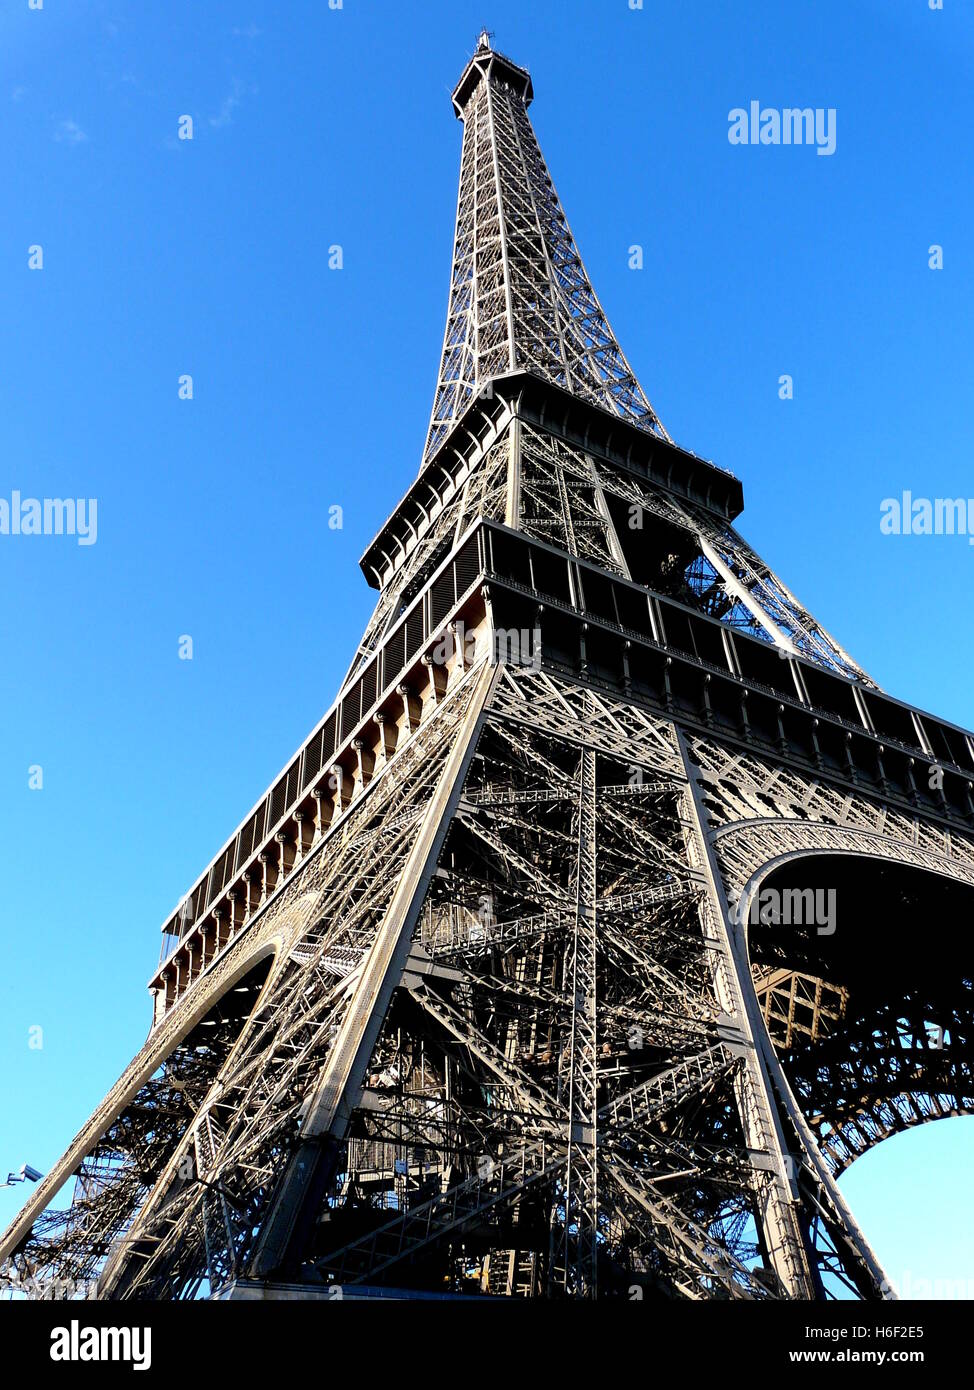 Tour Eiffel à Paris, vu du dessous de l'une des jambes de fer, sur le bleu ciel. Septembre Banque D'Images